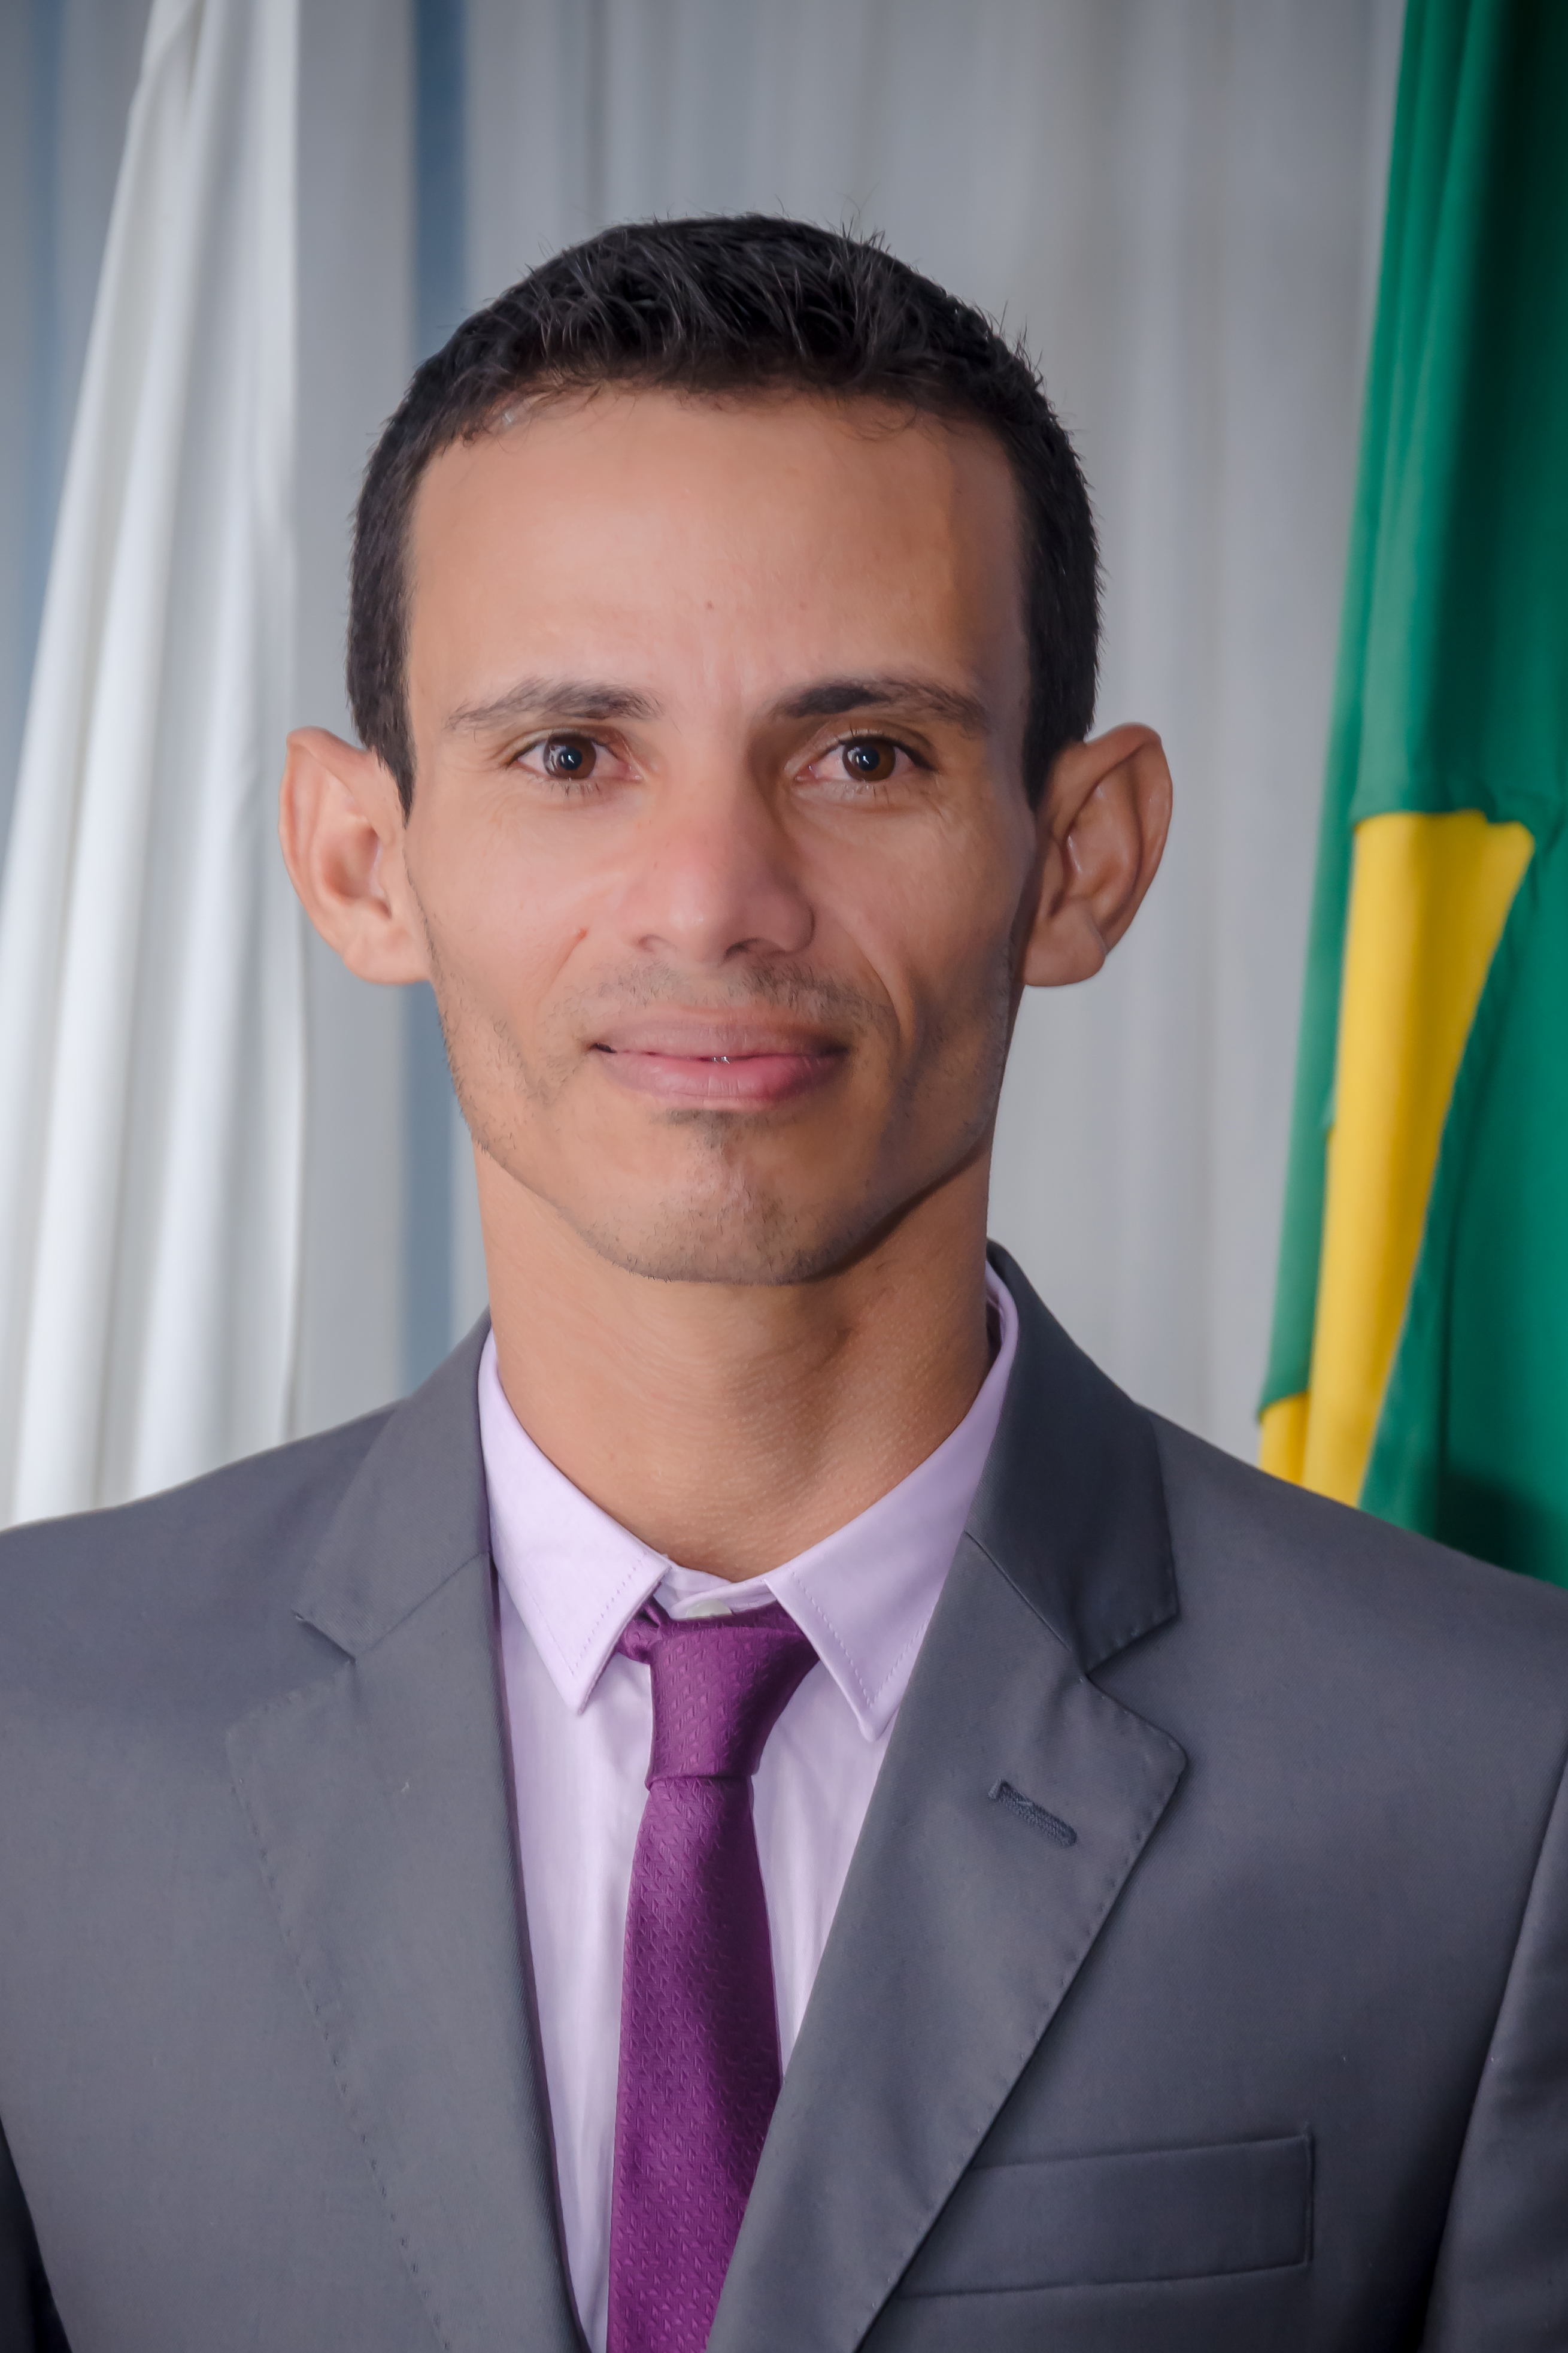 Elias Vieira dos Santos